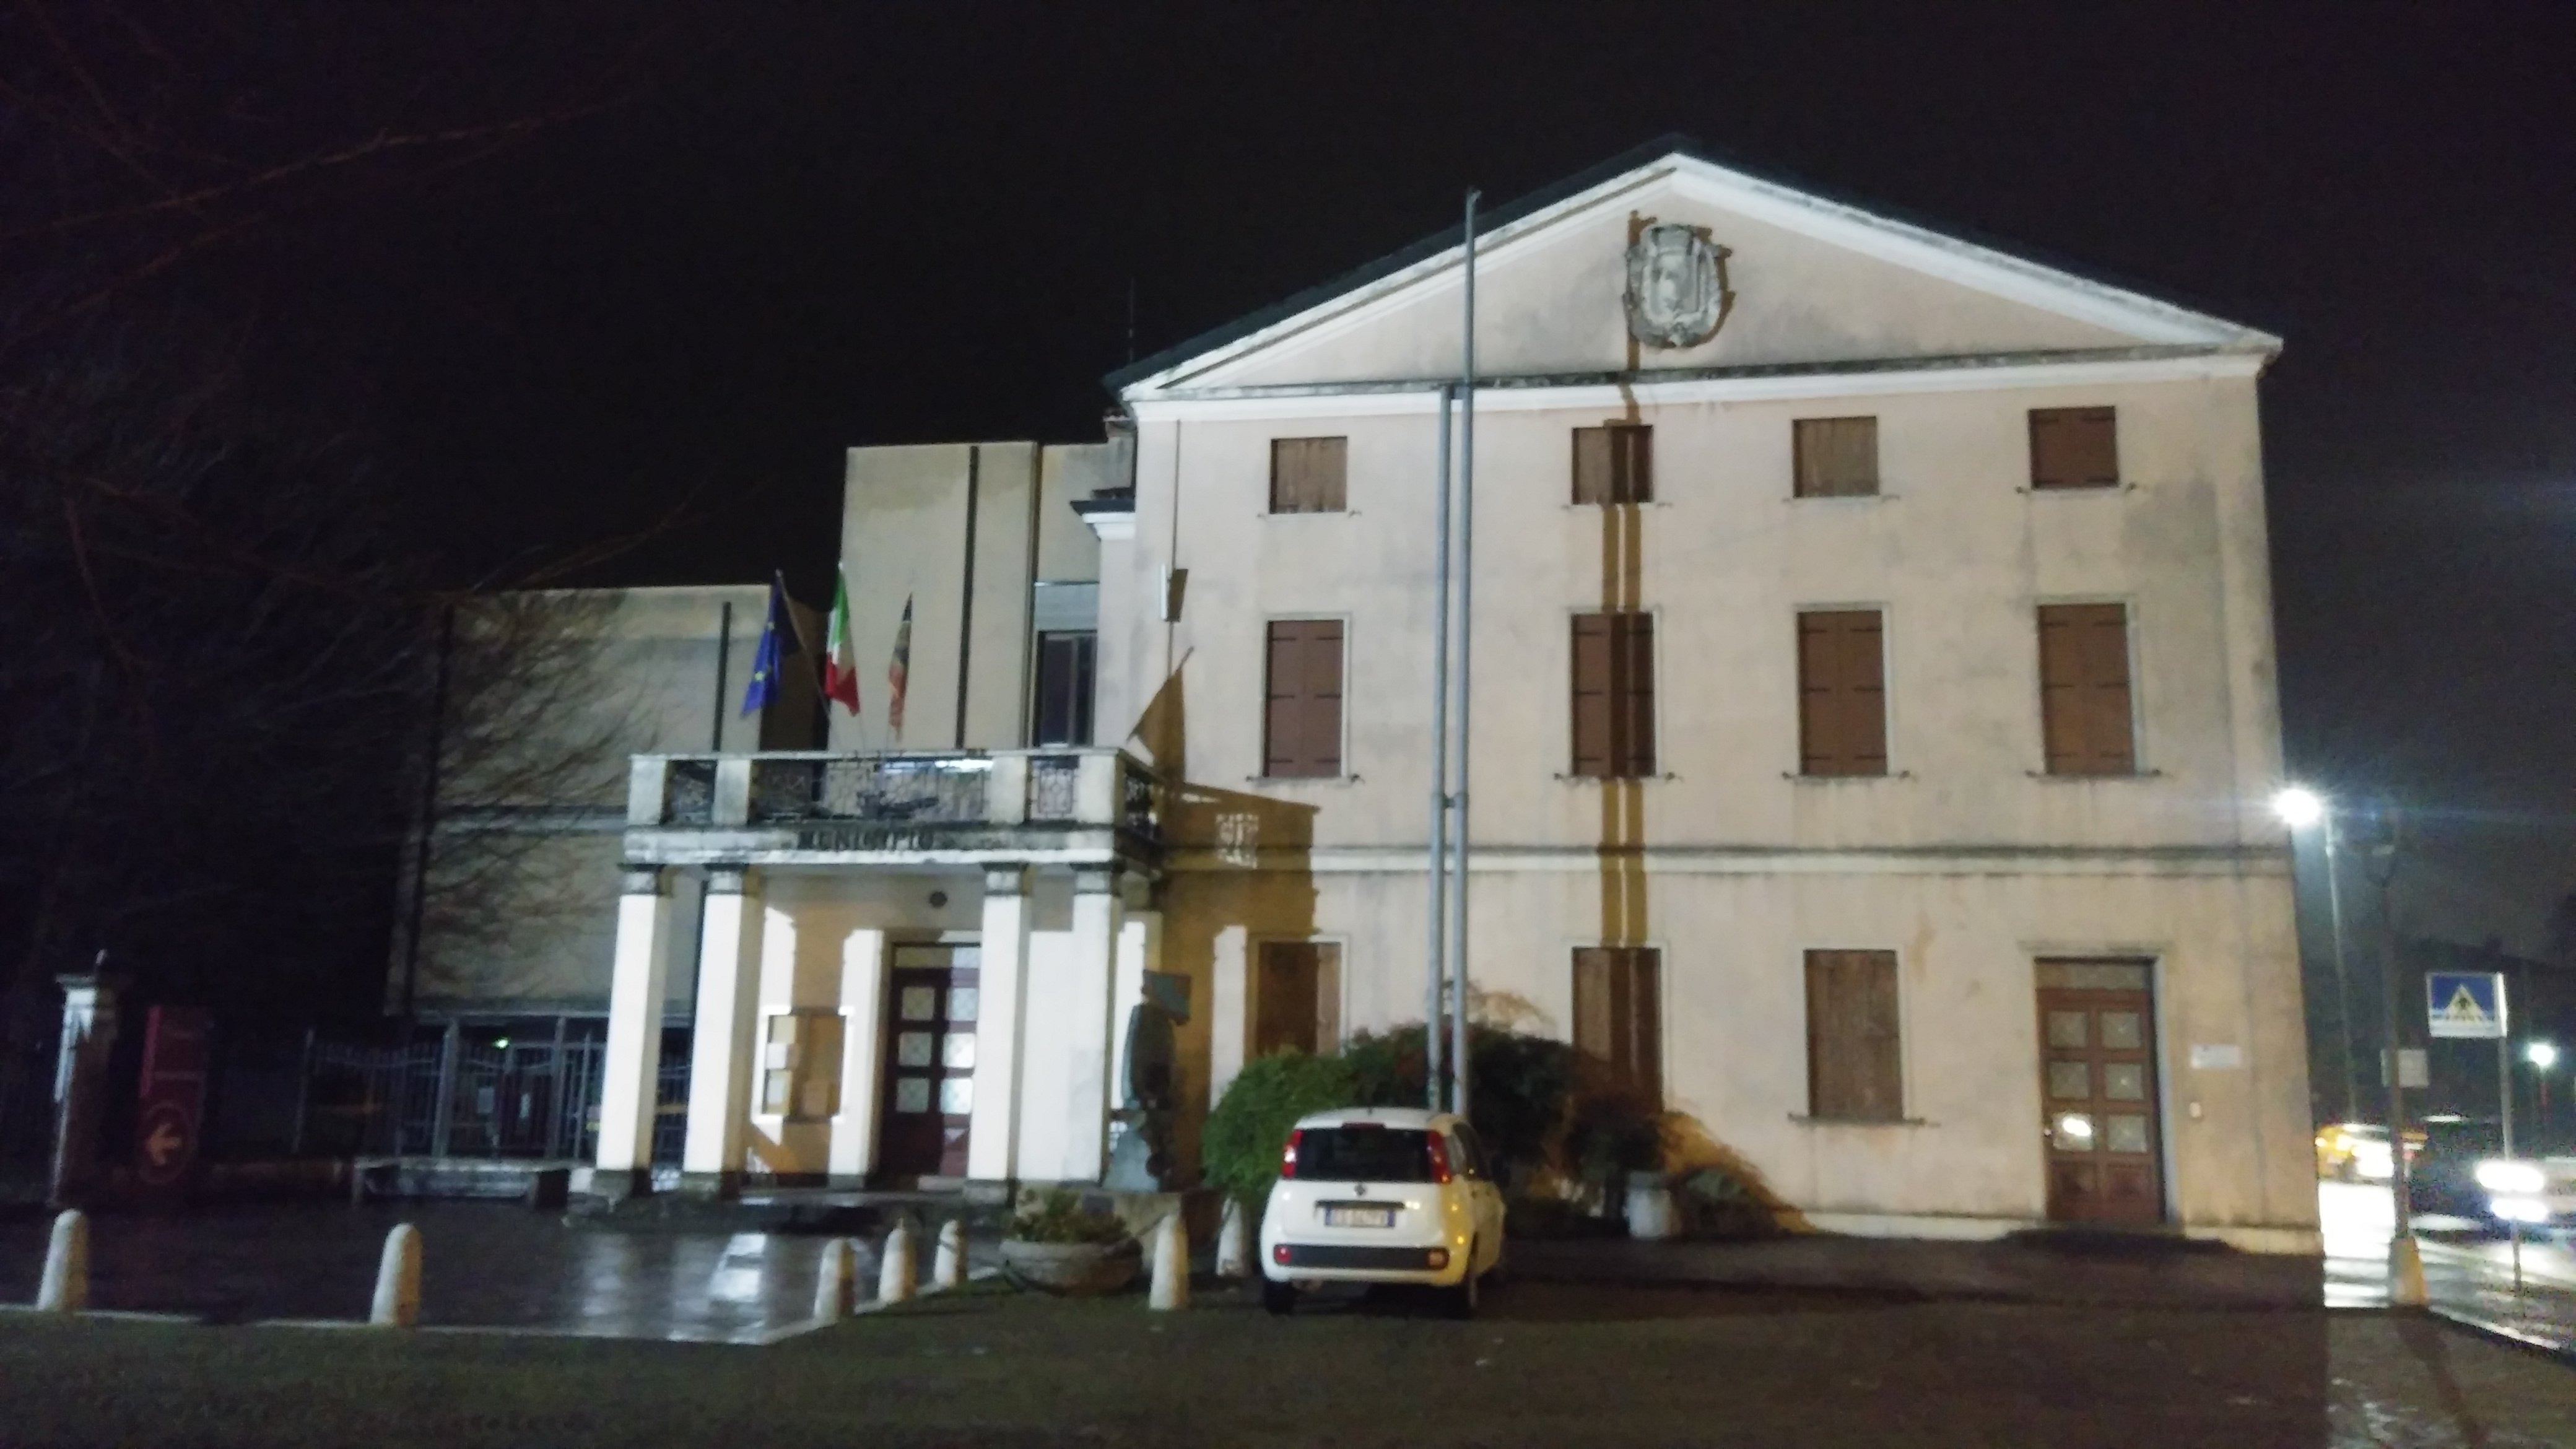 Villa Soncin, Silvestri, Rossi di Rubano